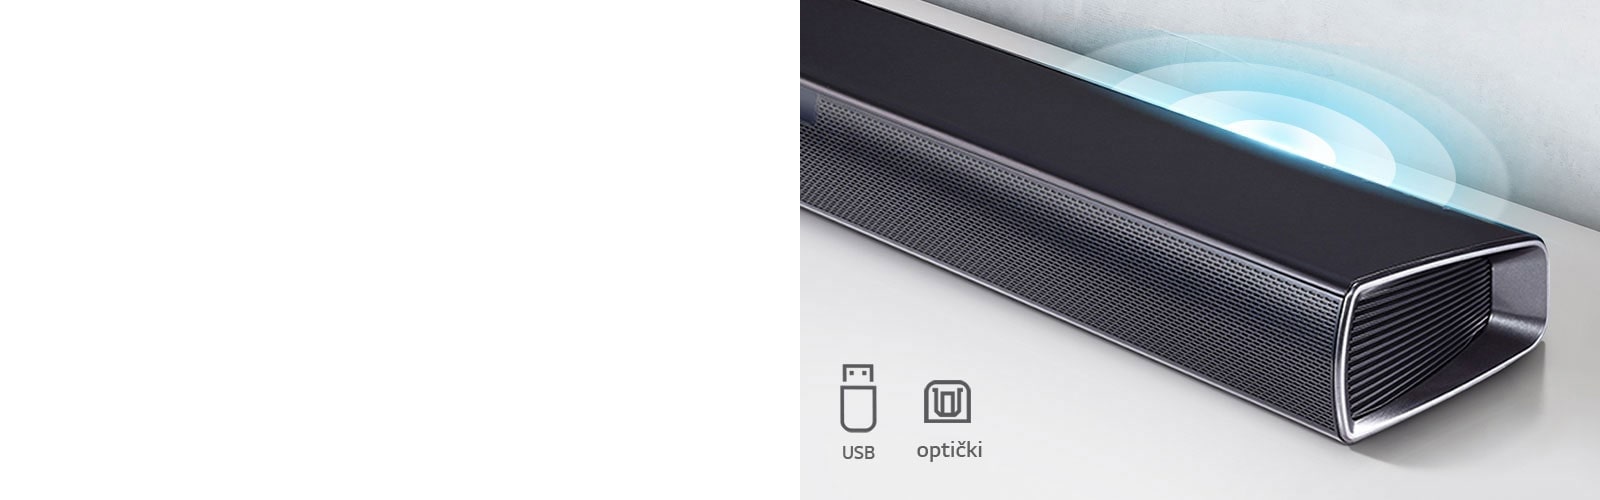 LG Soundbar zvučnik nalazi se na beloj polici. Grafika zvuka se pojavljuje iz zvučnika. Prikazuje ikonice USB, Optički.